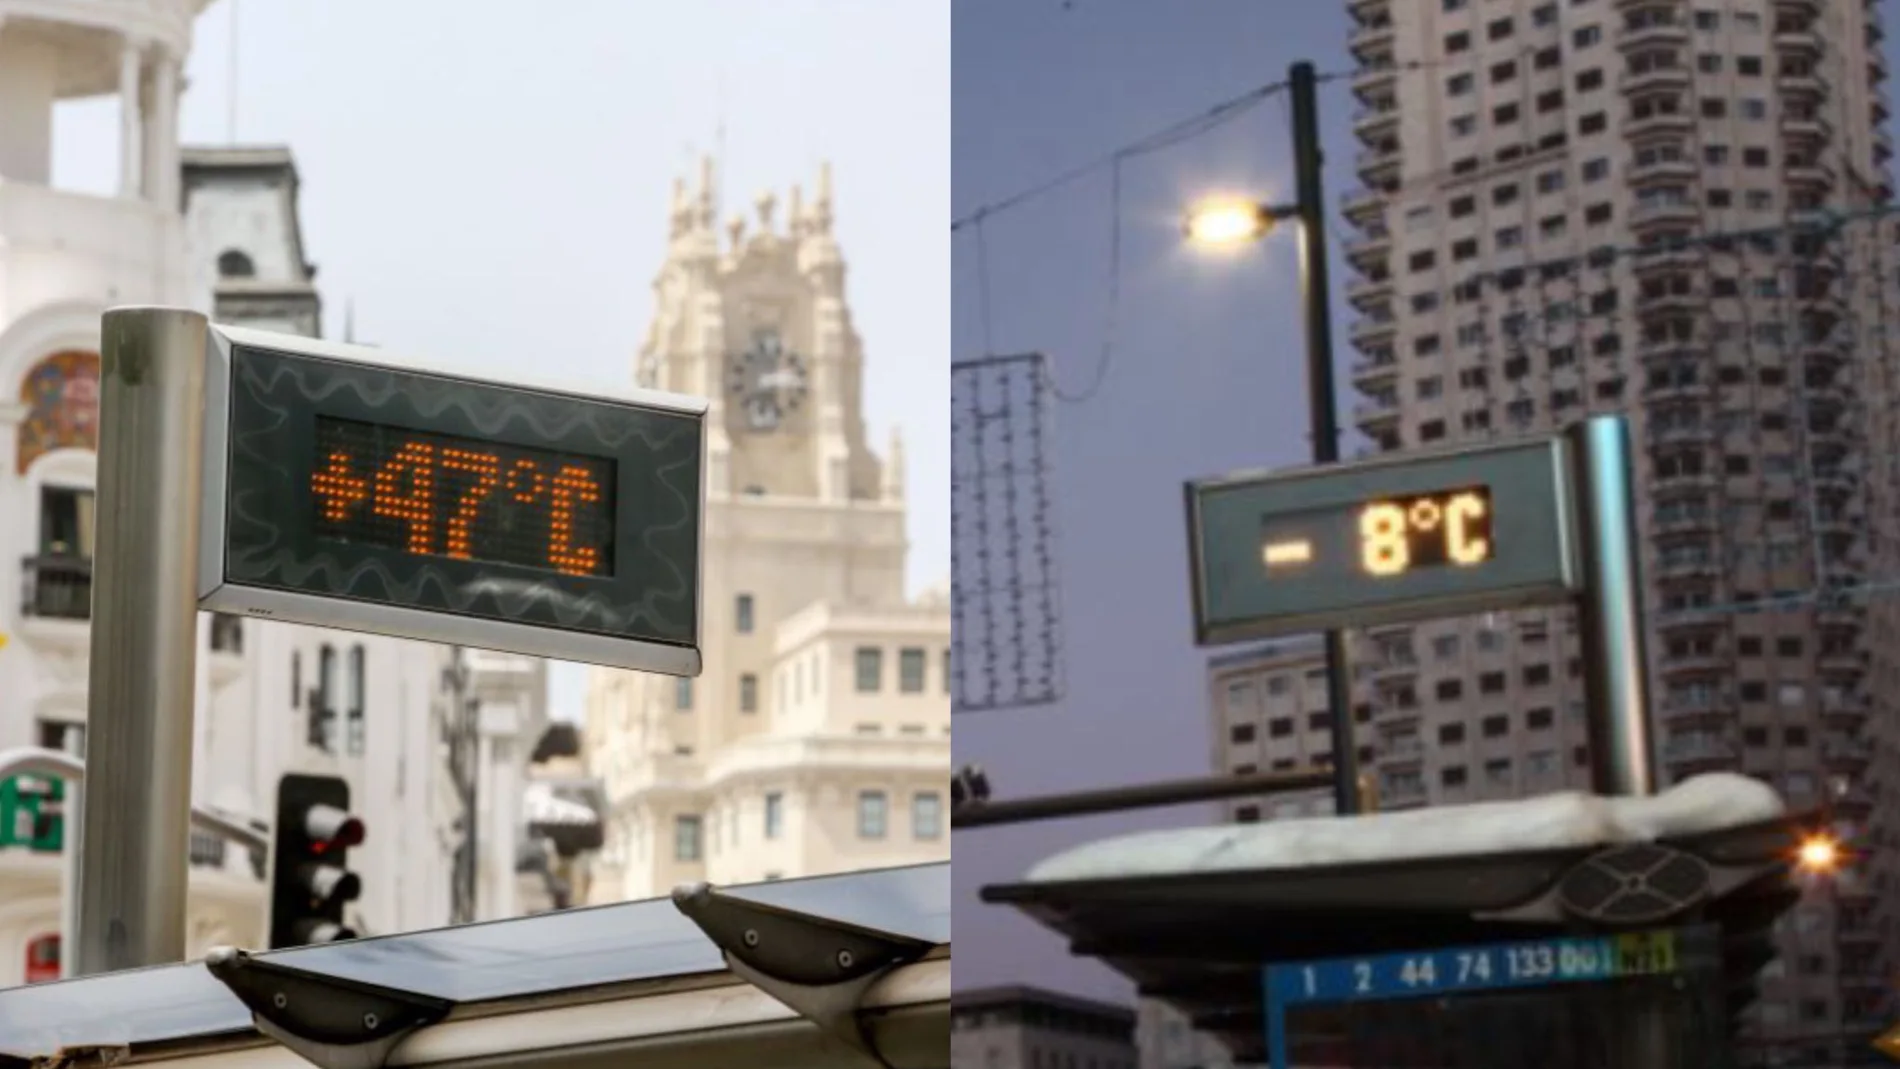 Dos termómetros marcando la temperatura en Madrid. A la izquierda, 47 grados; a la derecha, -8 grados